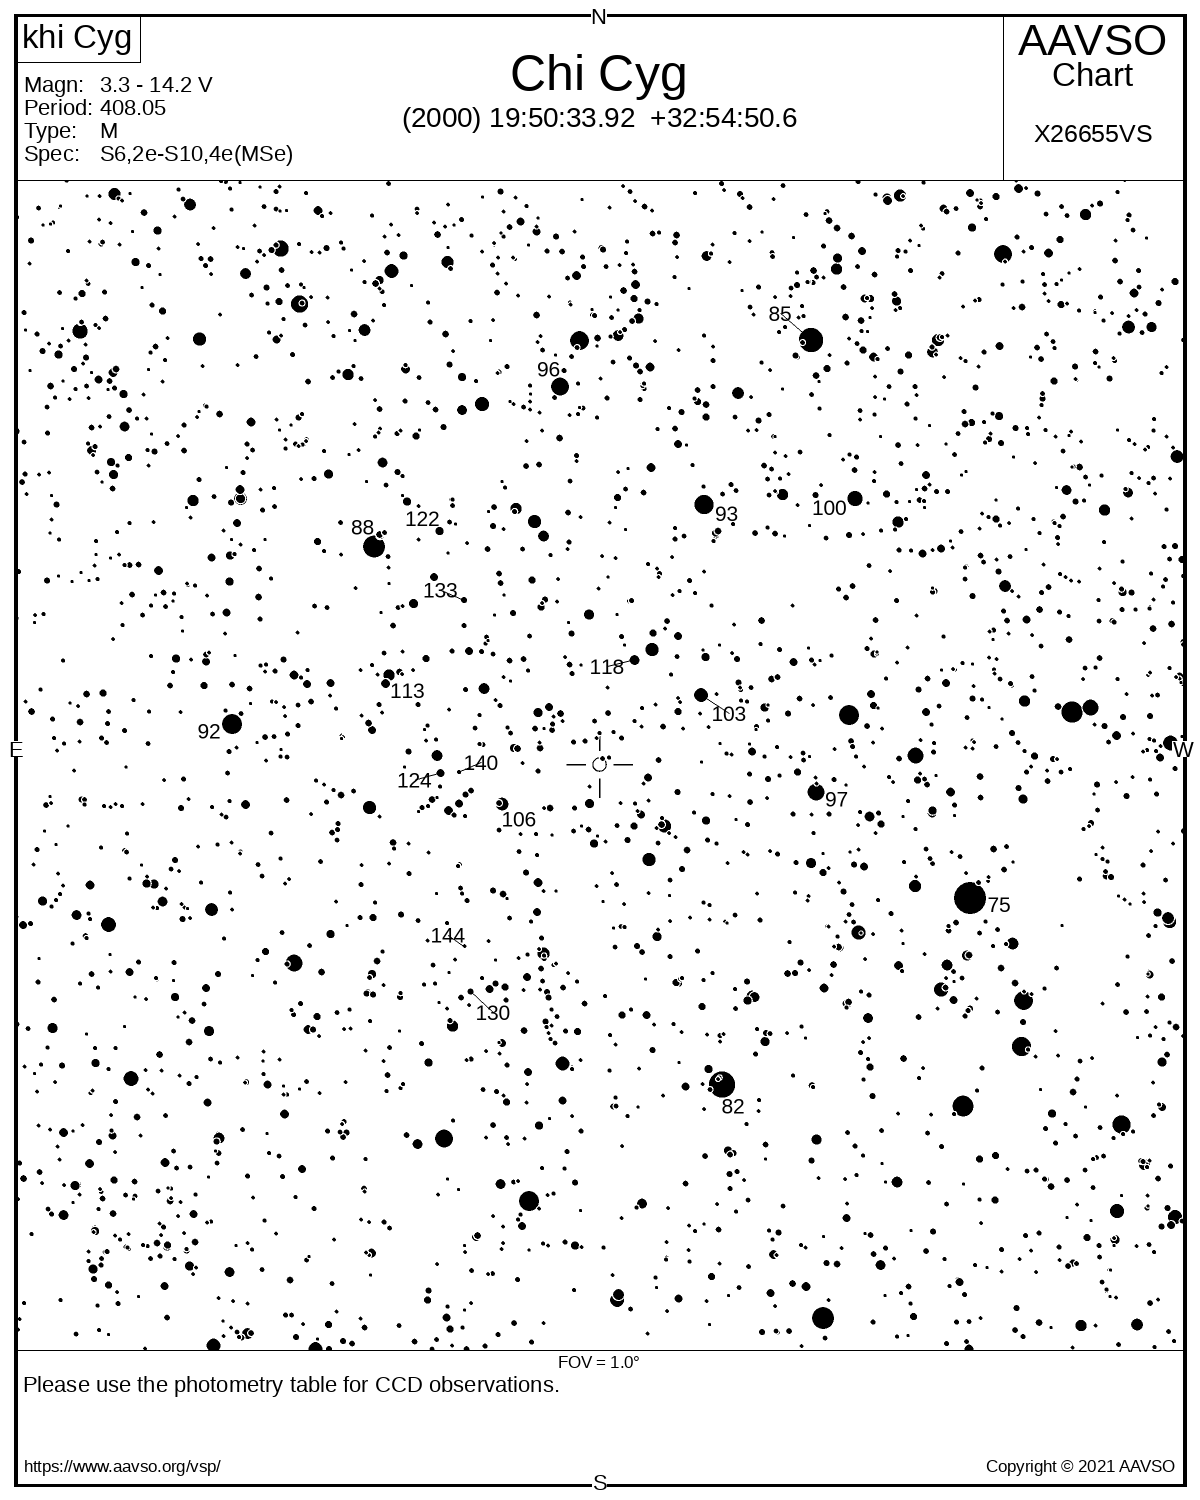 Eine Karte zeigt die Umgebung des  veränderlichen Sterns Chi Cygni mit schwarzem Sternen auf weißem Hintergrund. Die Helligkeiten einiger Vergleichssterne sind in Einheiten von Zehntel Magnituden markiert.